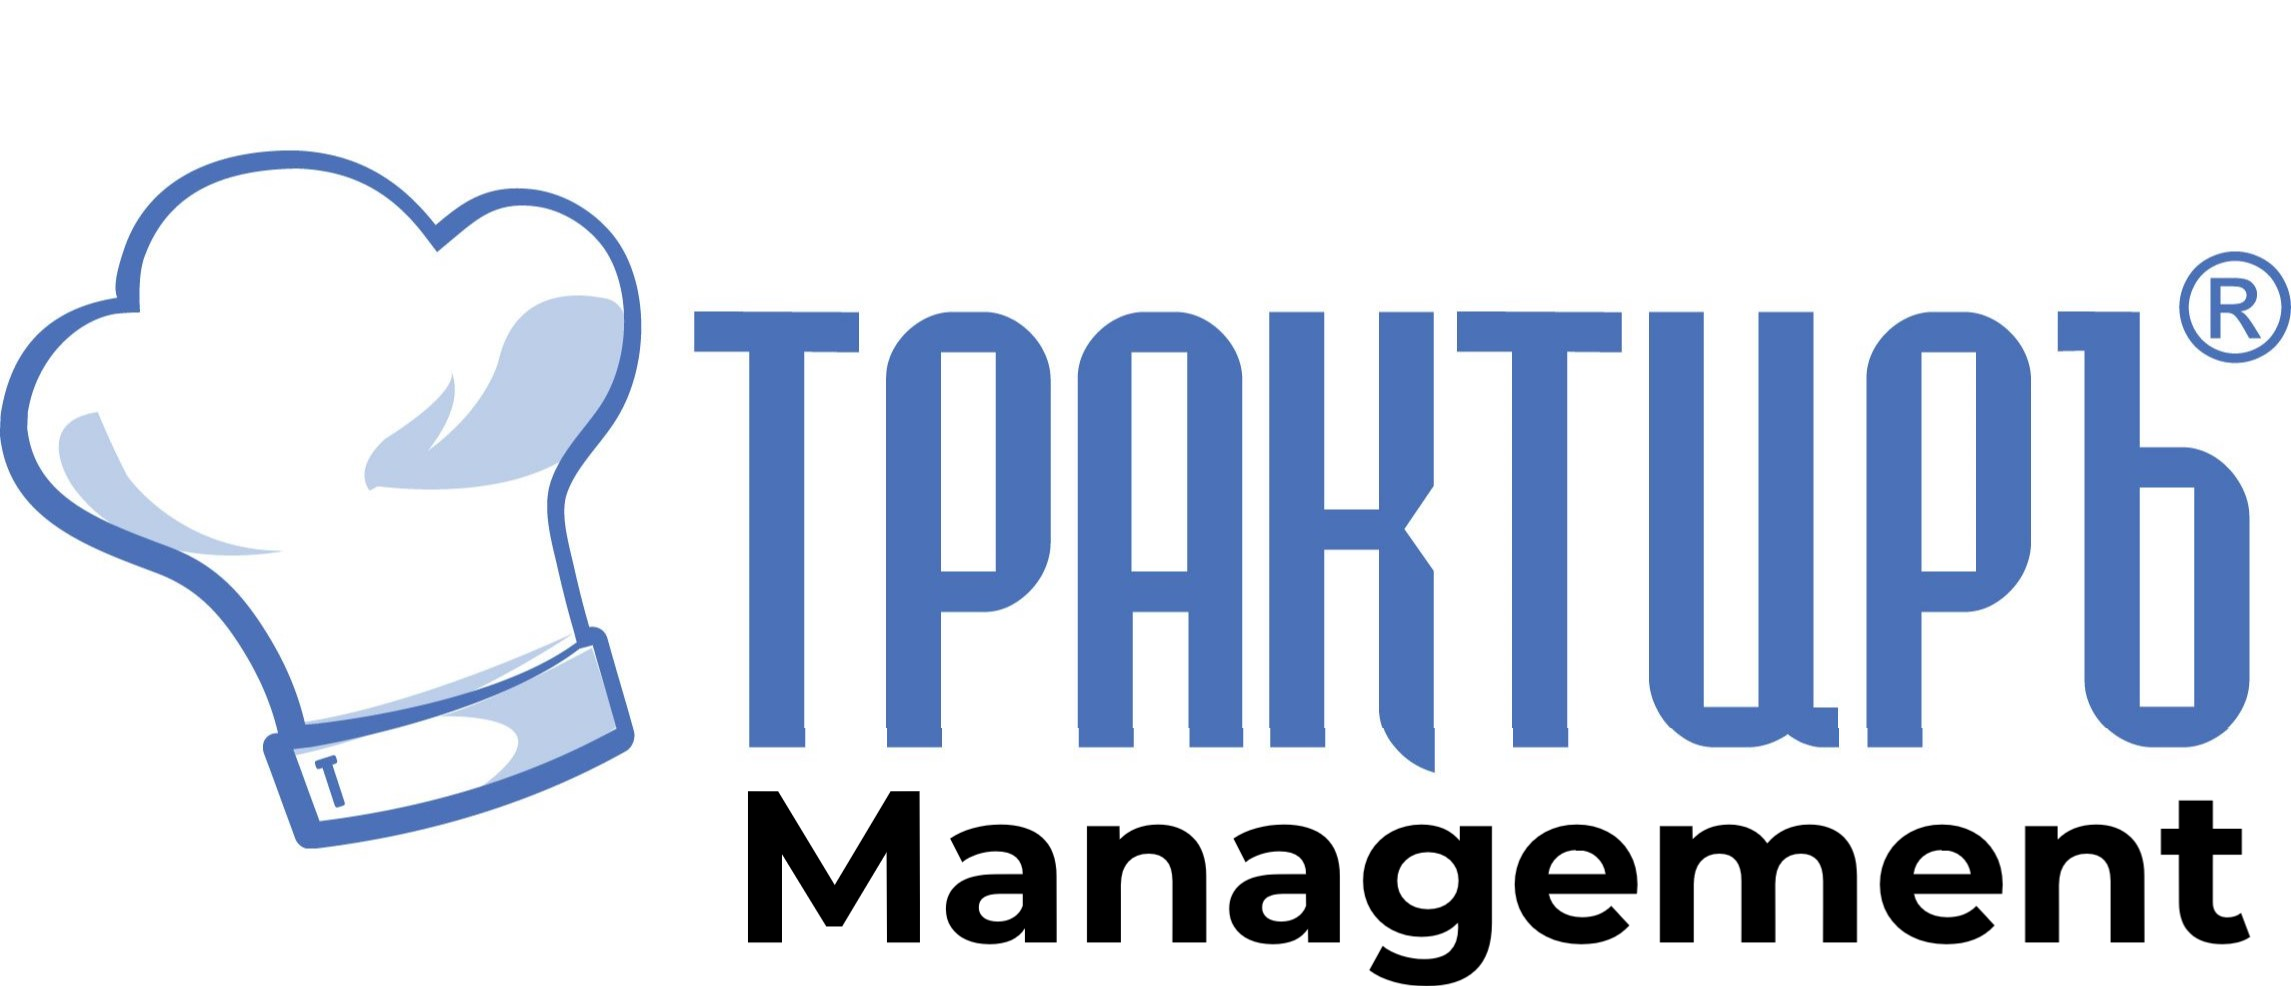 Трактиръ: Management во Владивостоке